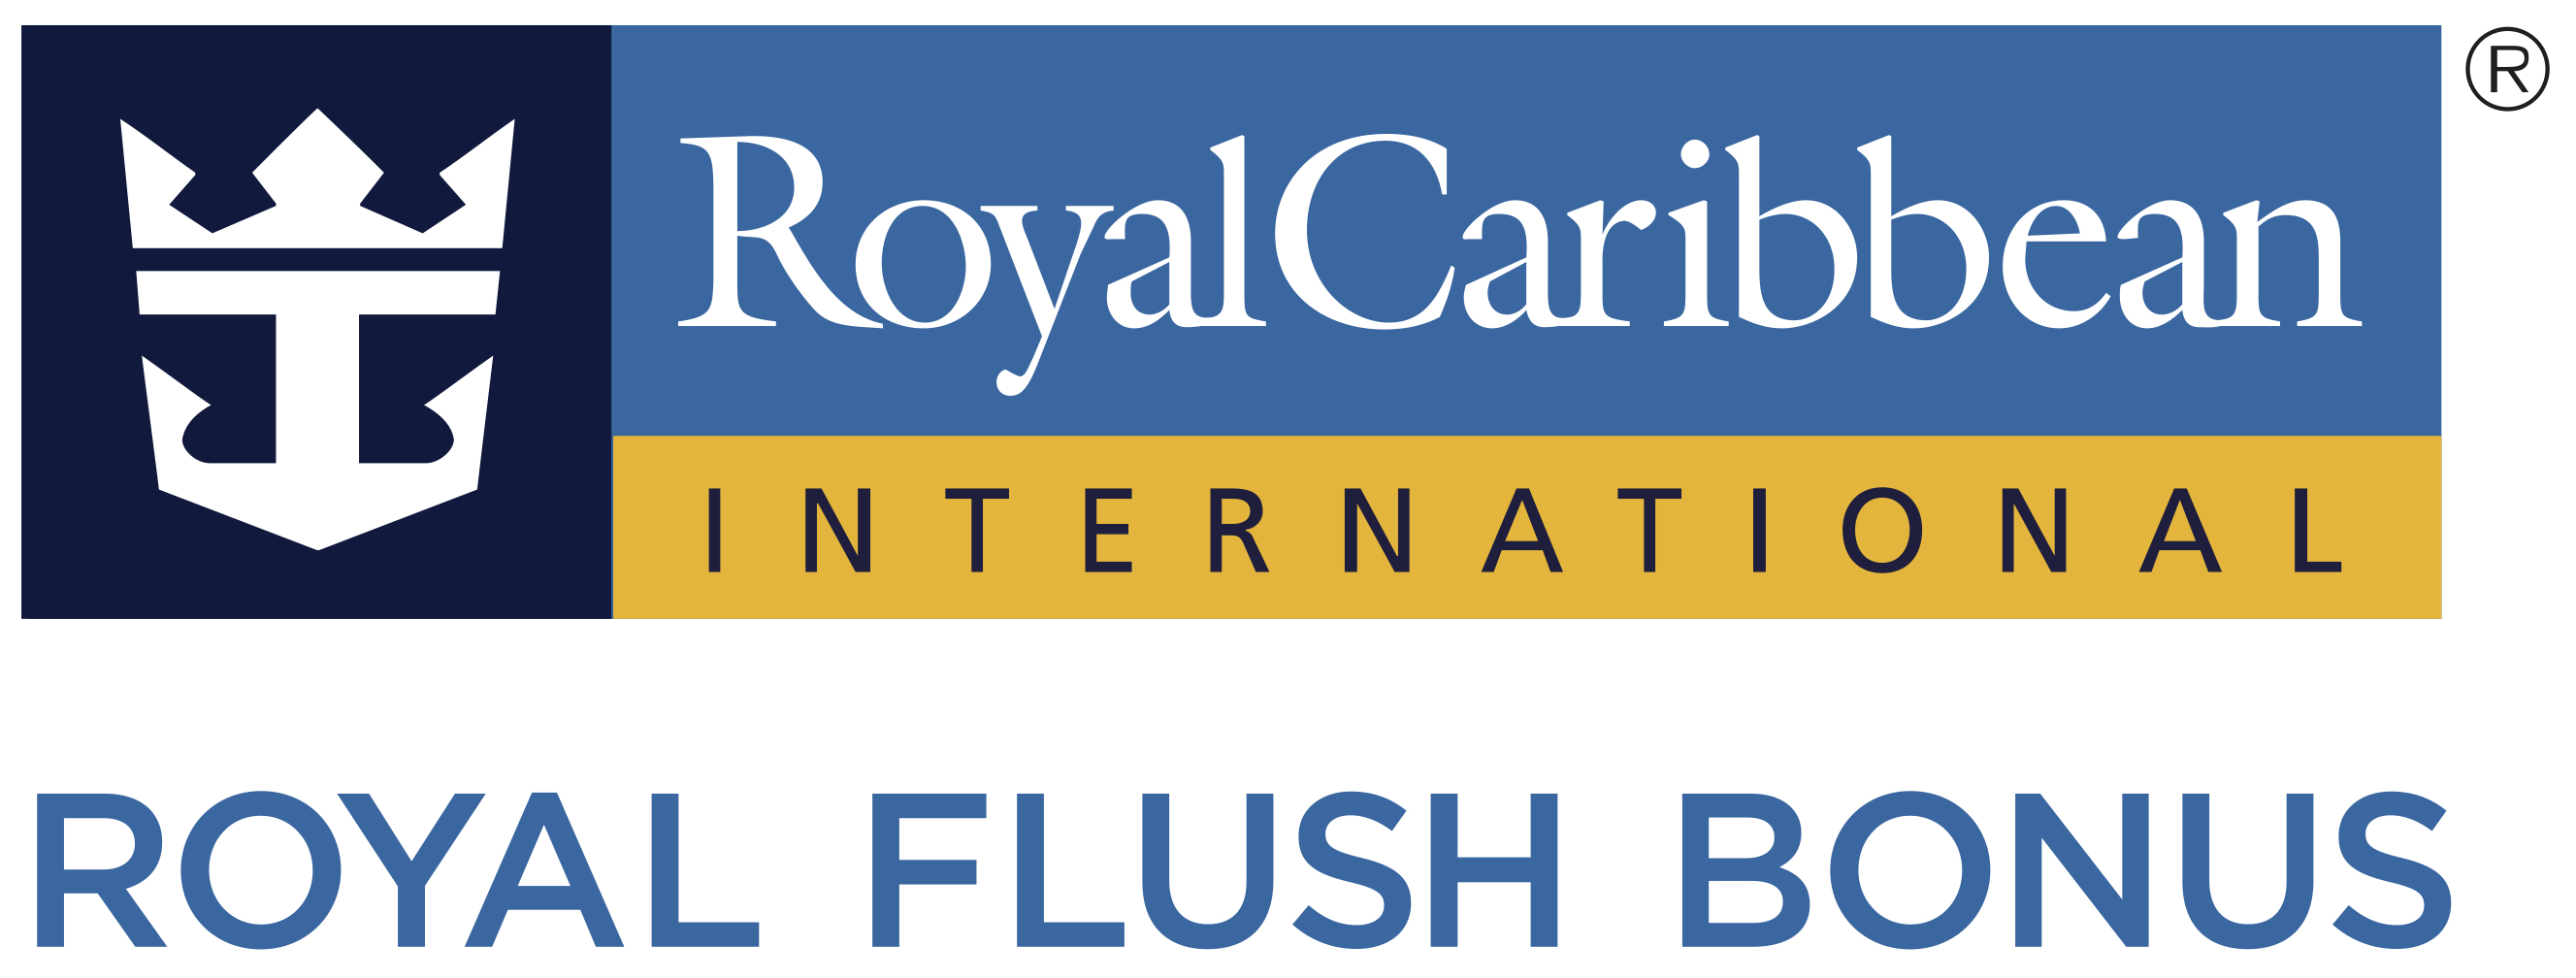 Royal Caribbean - Royal Flush Bonus Logo